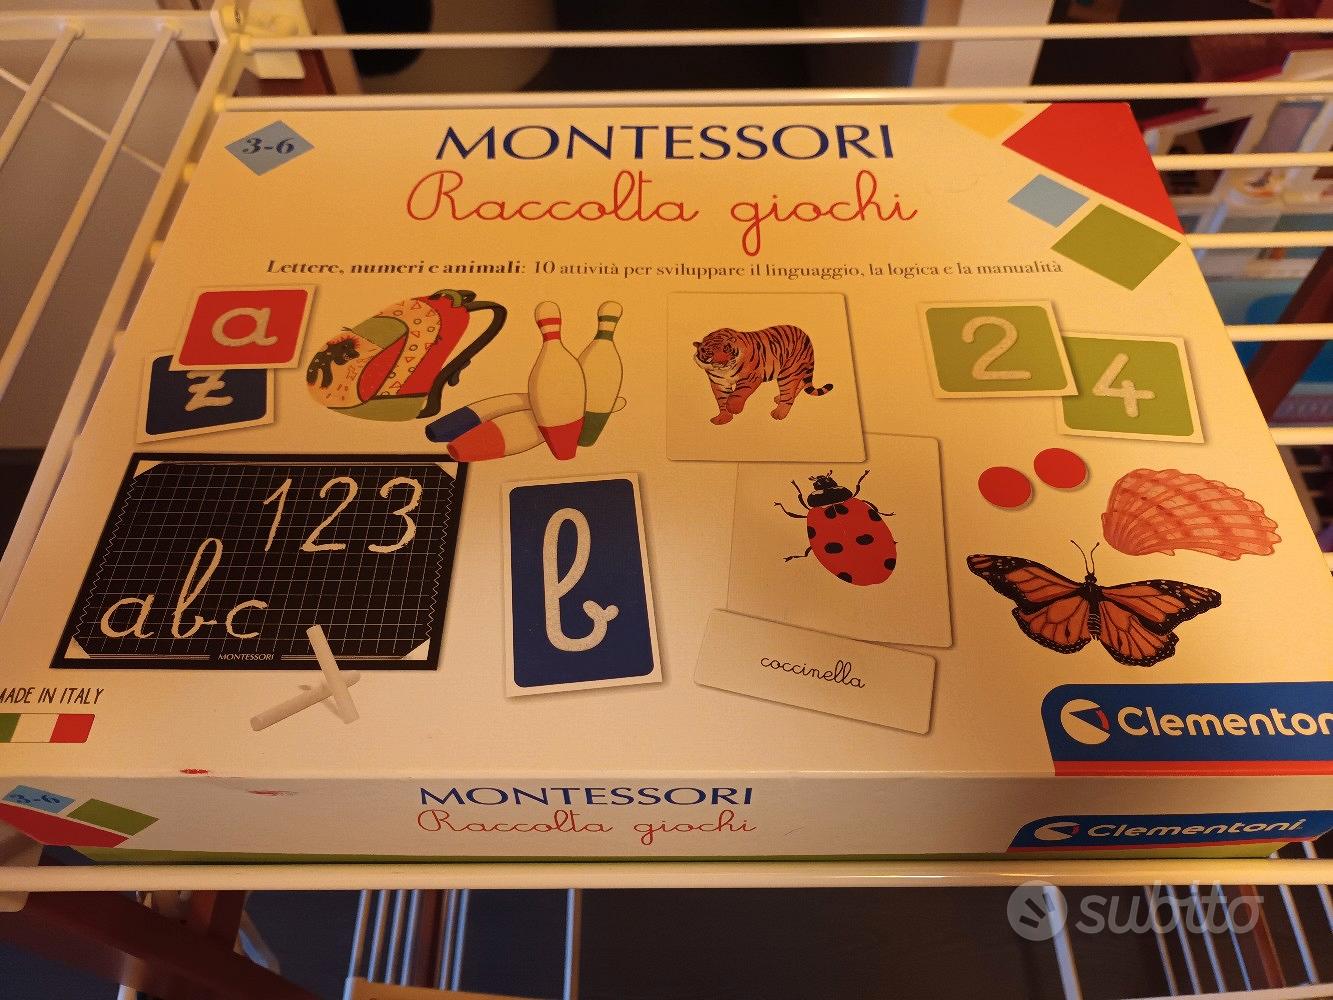 Montessori - Raccolta giochi – Clementoni